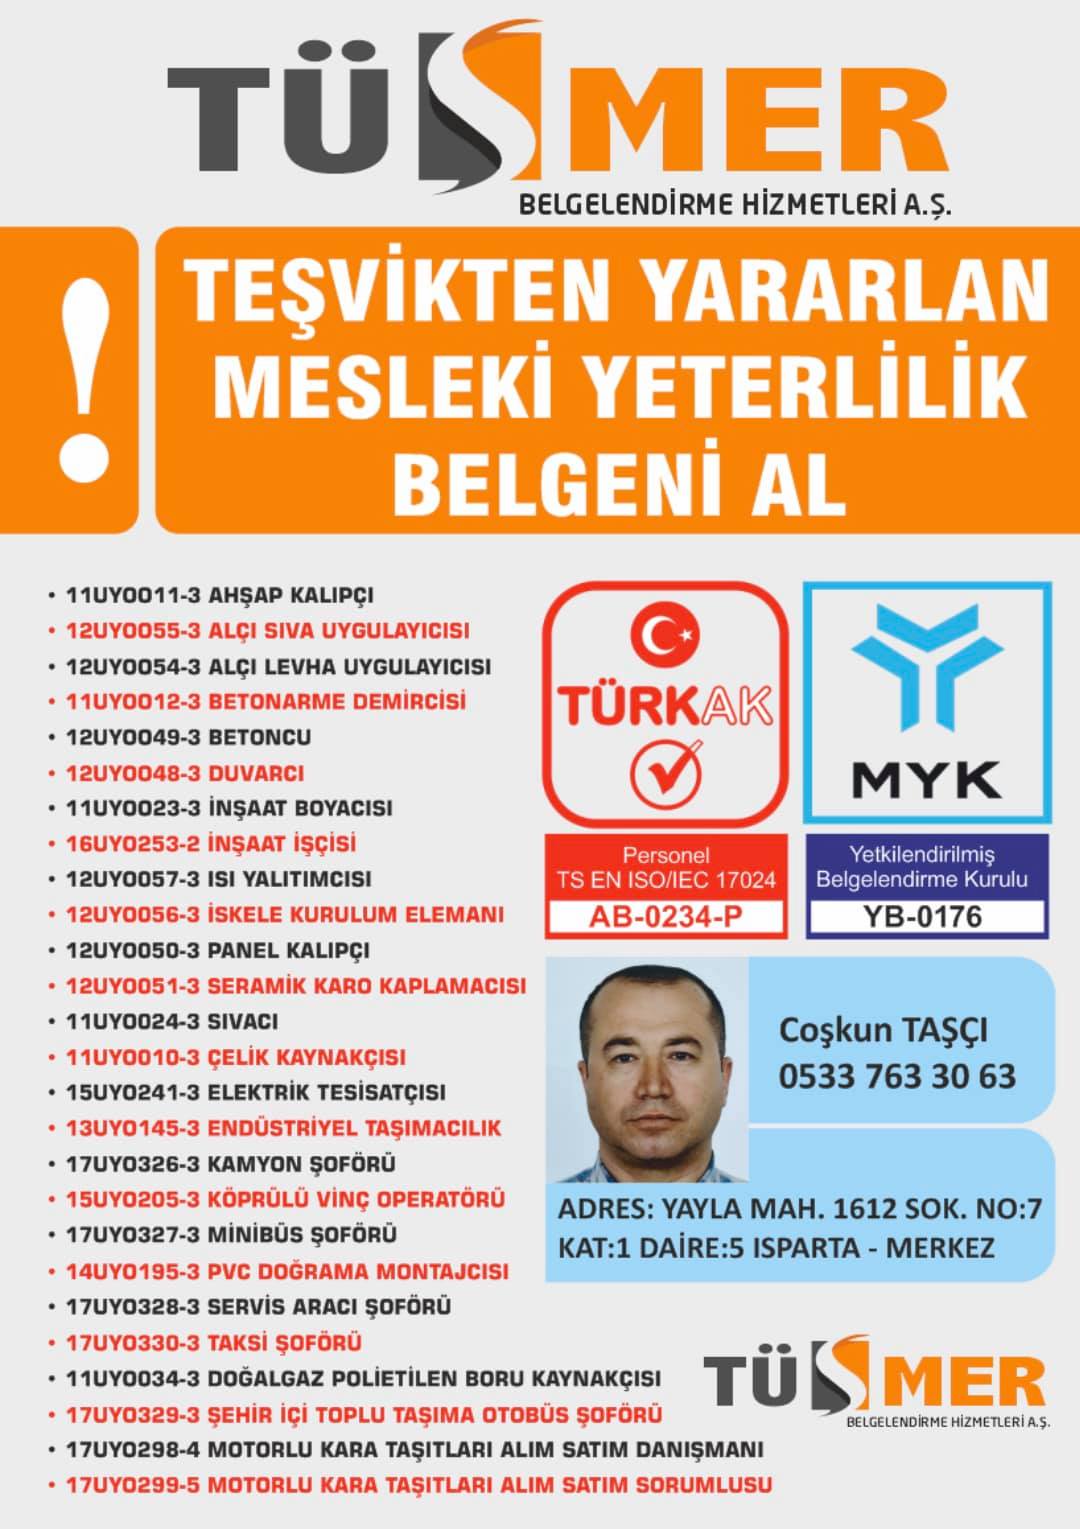 MYK MESLEKİ YETERLİLİK BELGESİ Manavgat Antalya